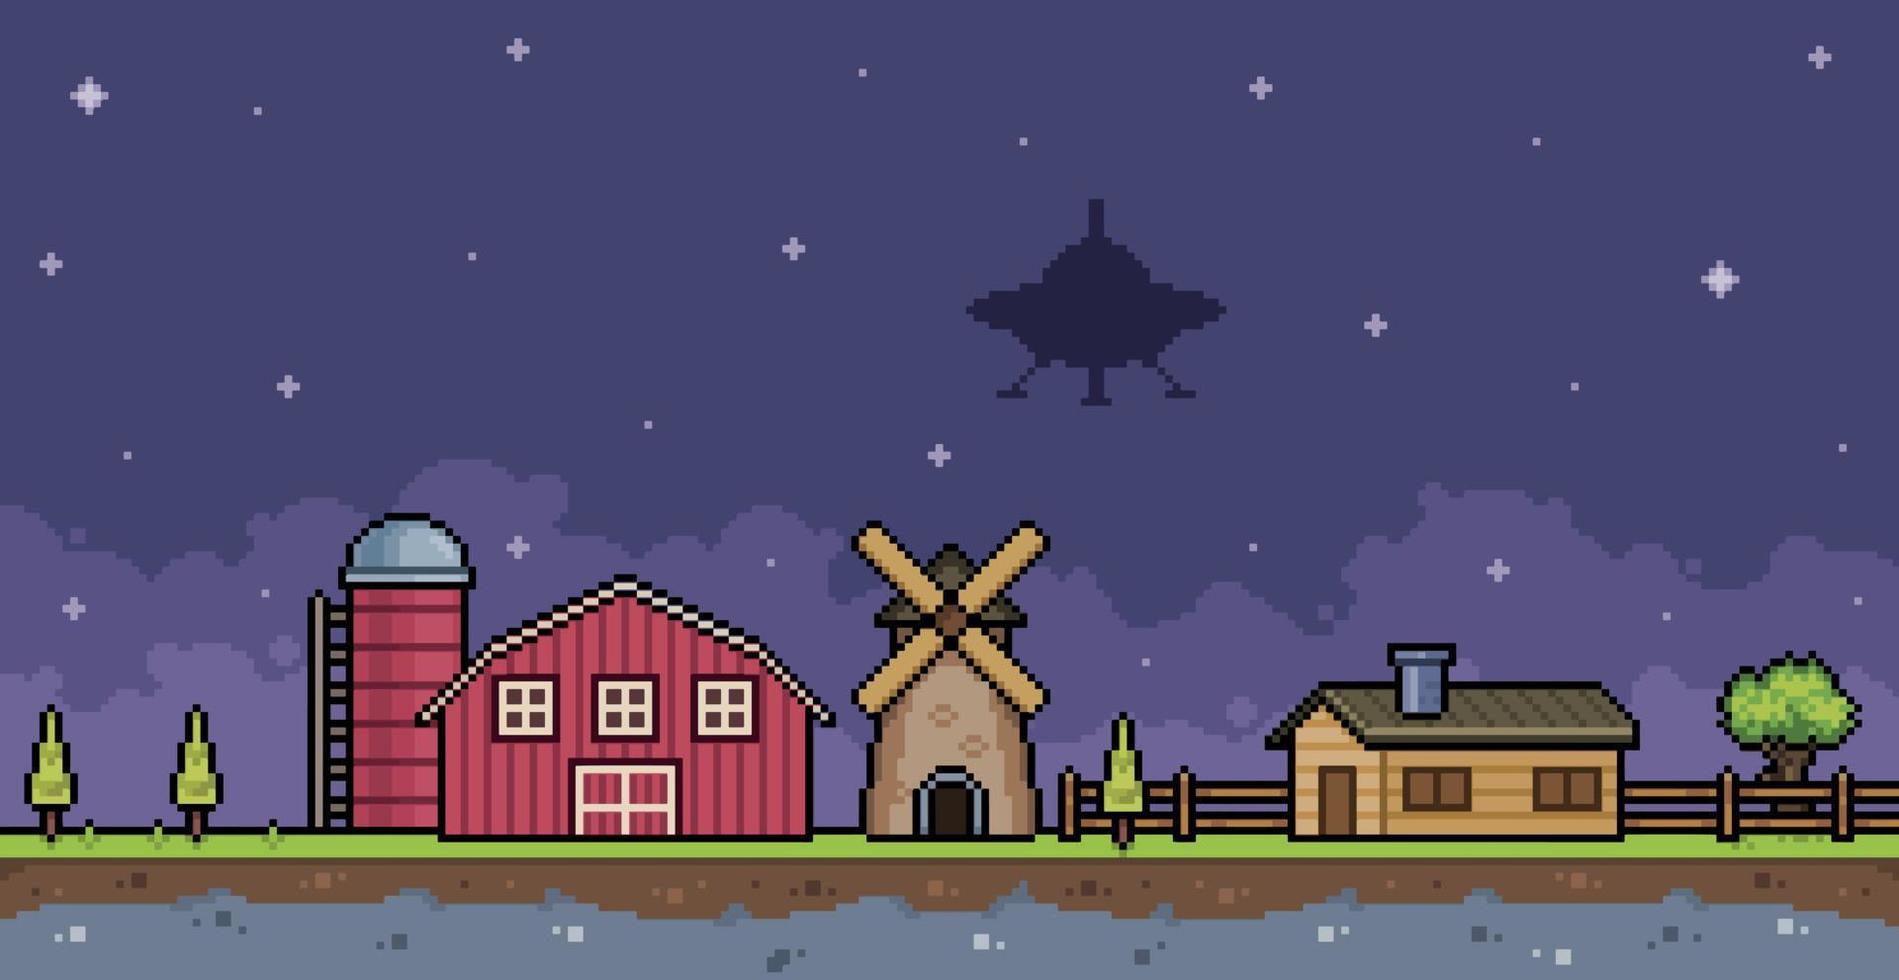 pixel arte ufo su azienda agricola con Casa, fienile, silo, mulino e volante piattino 8 bit gioco sfondo vettore